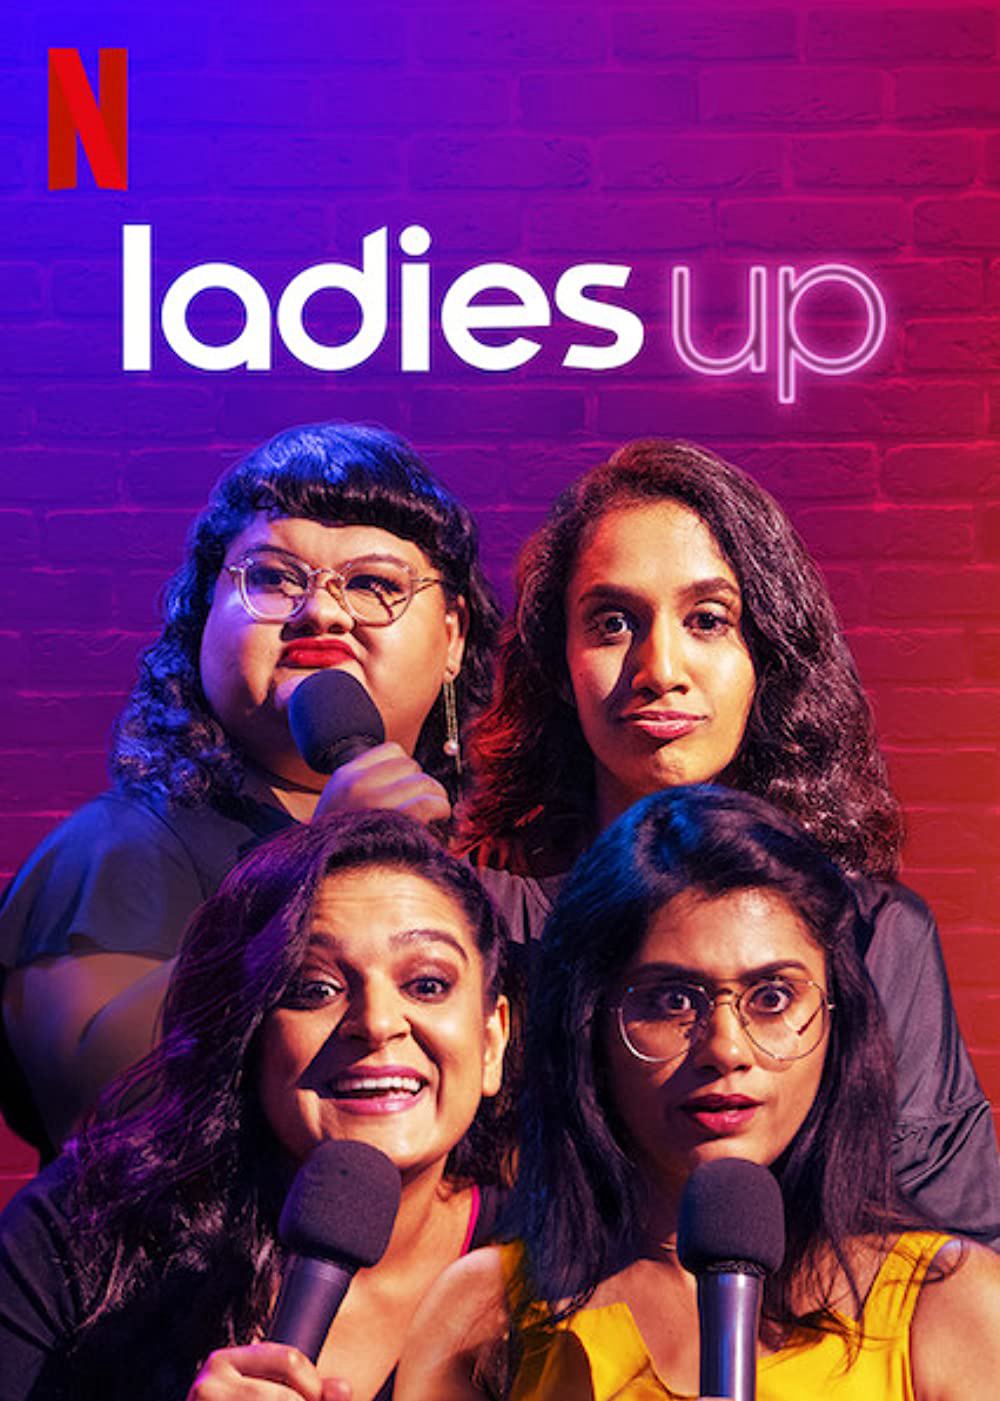 Poster Phim Các quý cô độc thoại (Ladies Up)